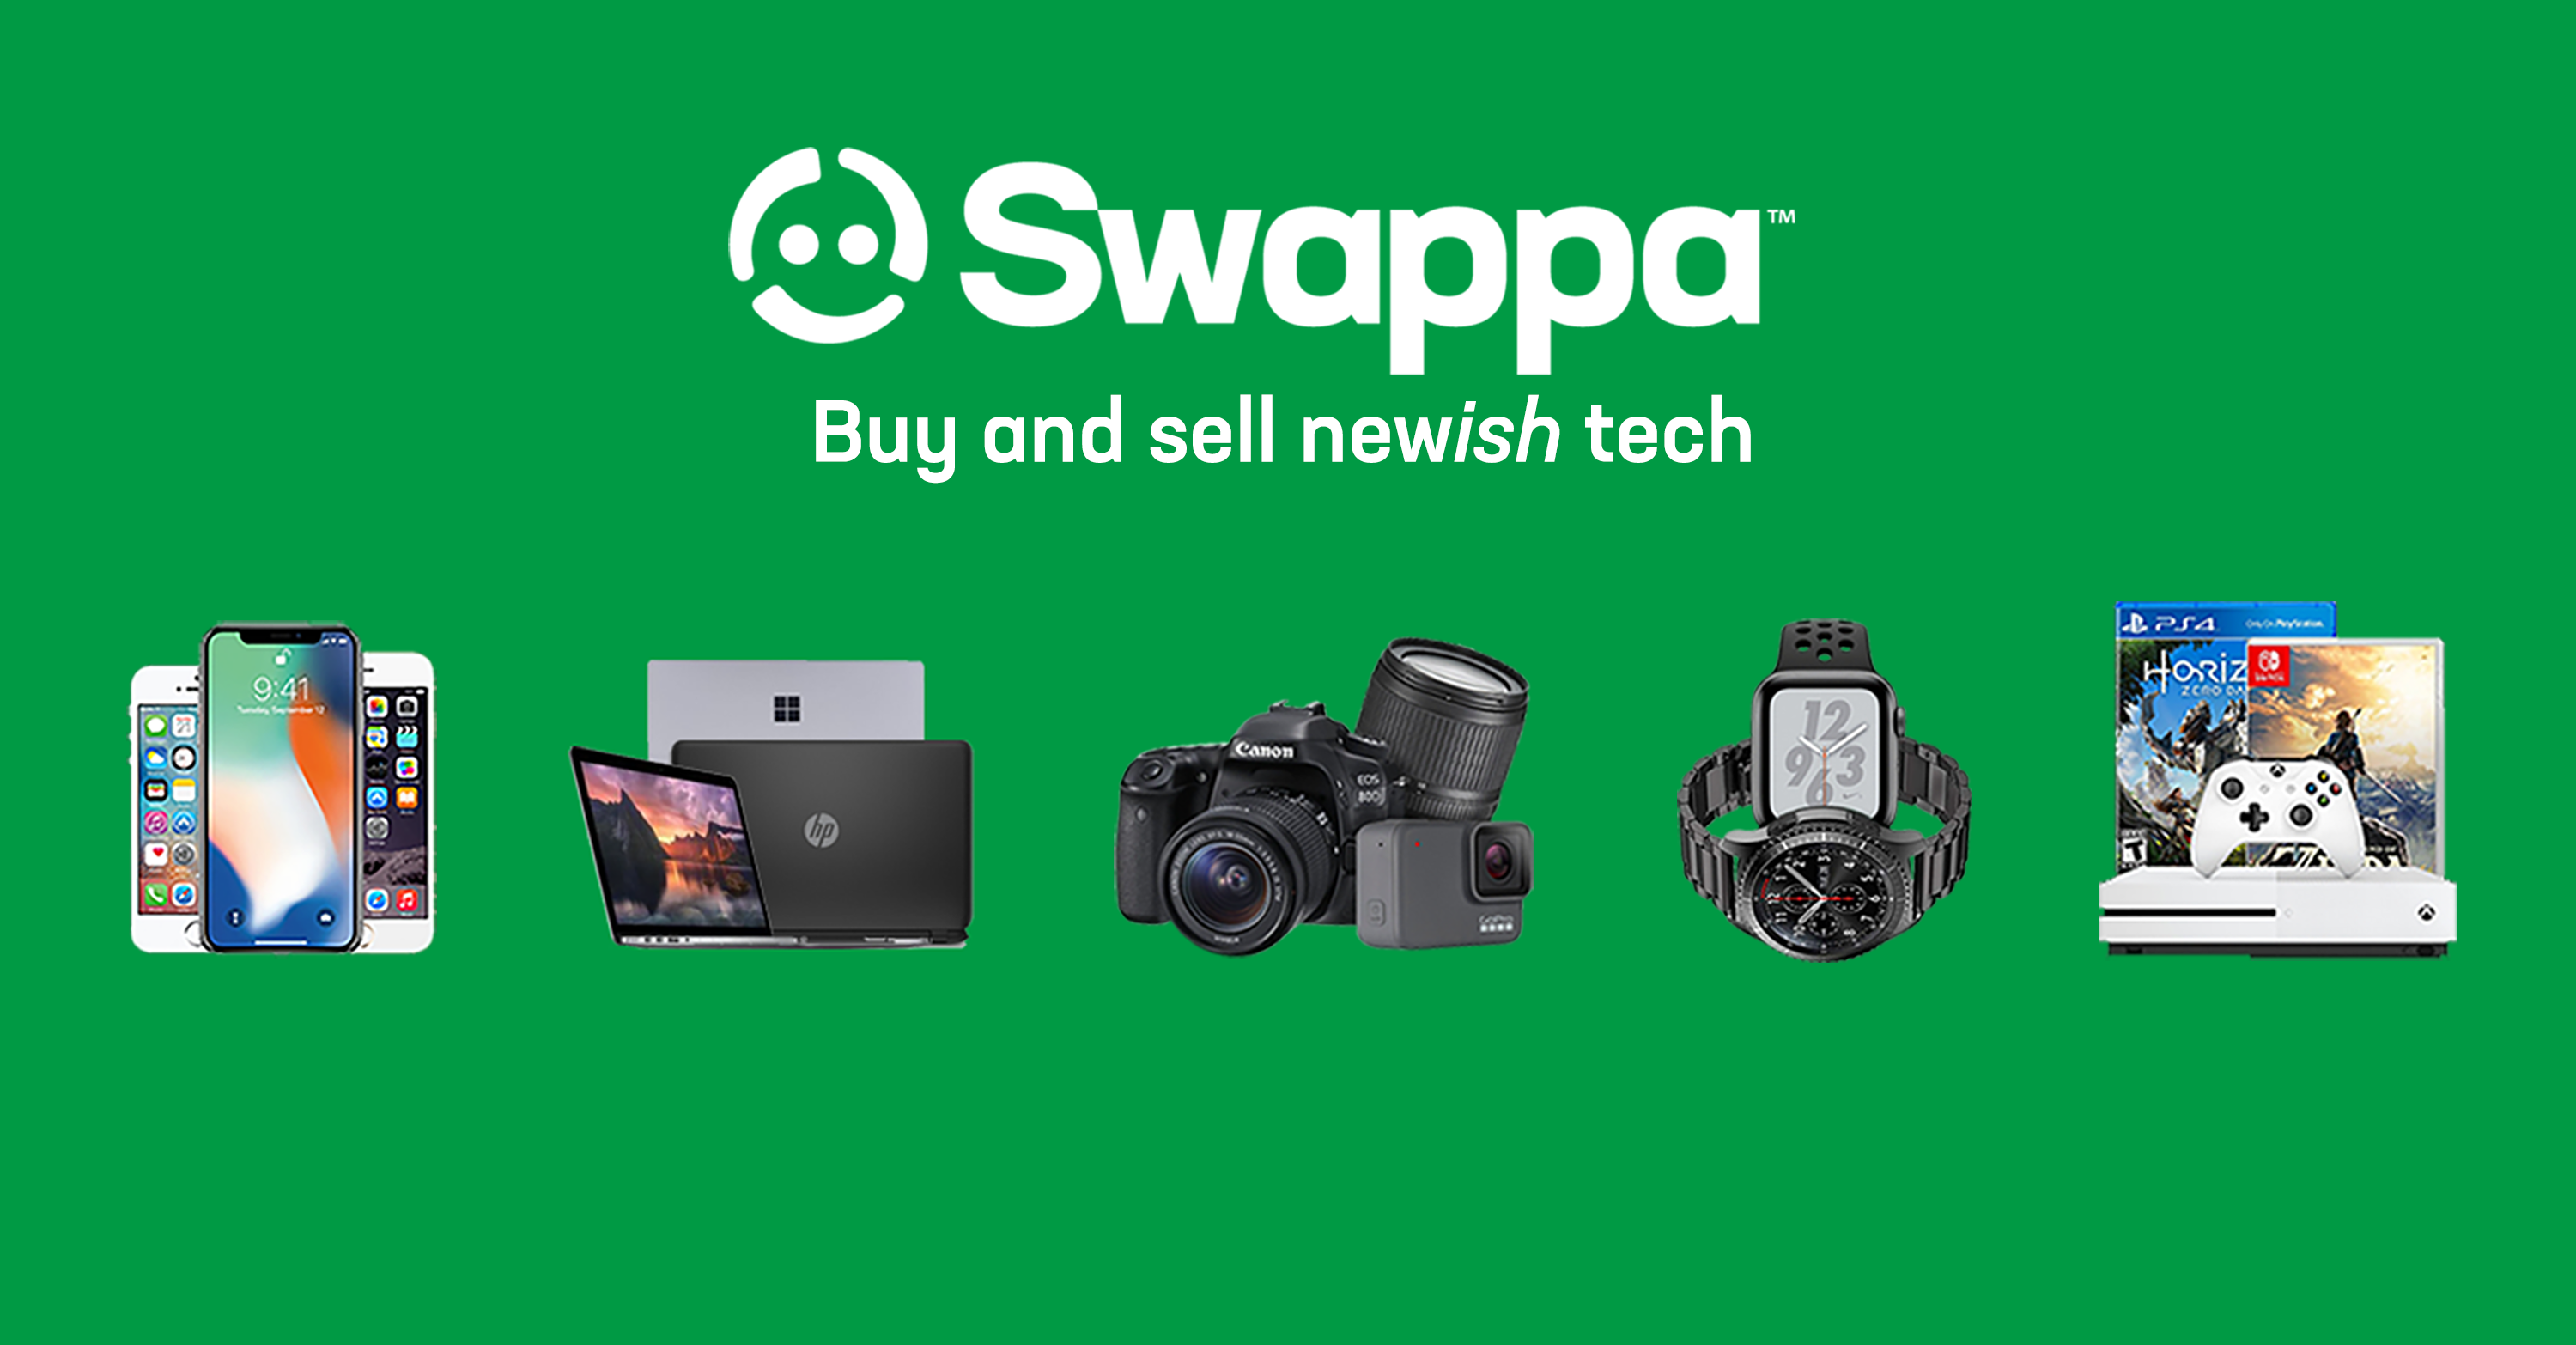 swappa.com